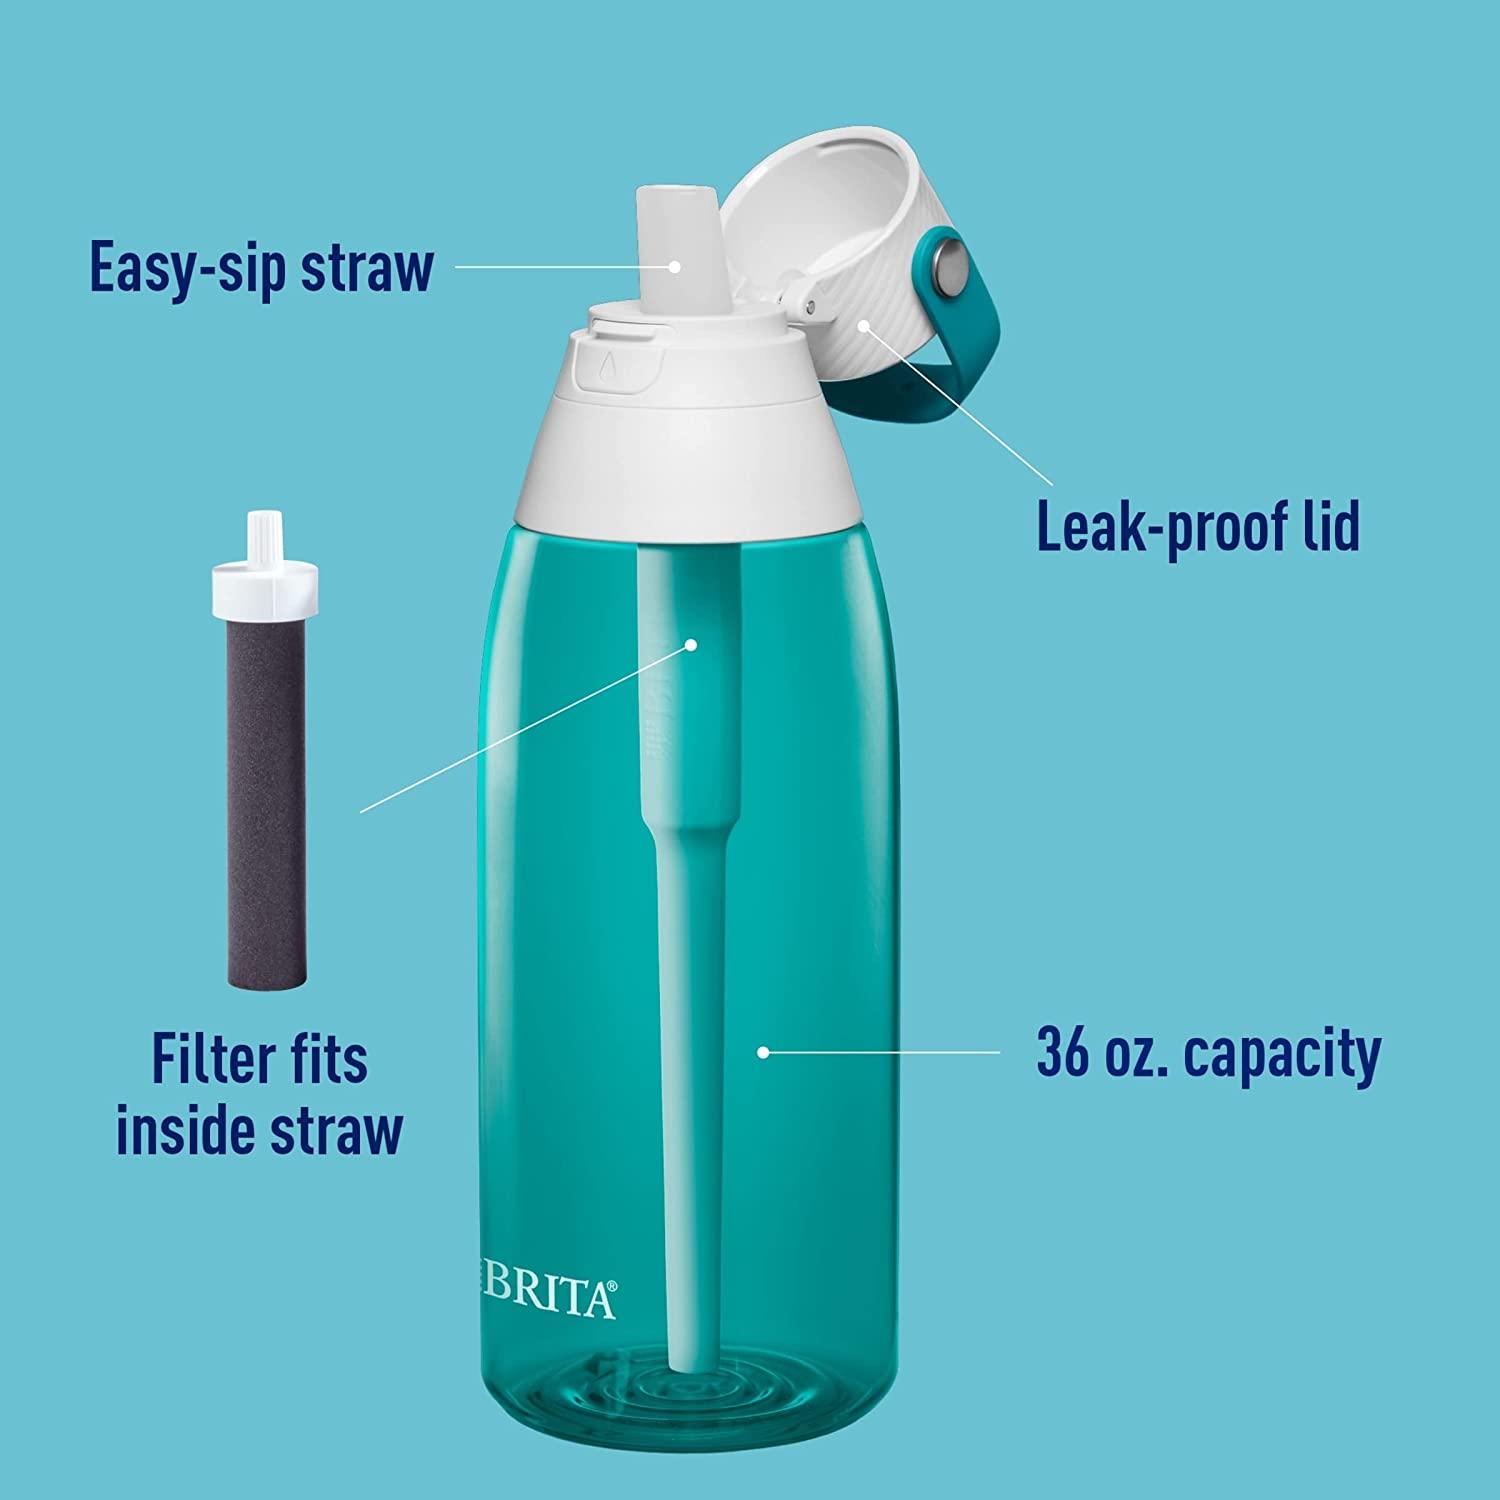 BRITA water filter bottles